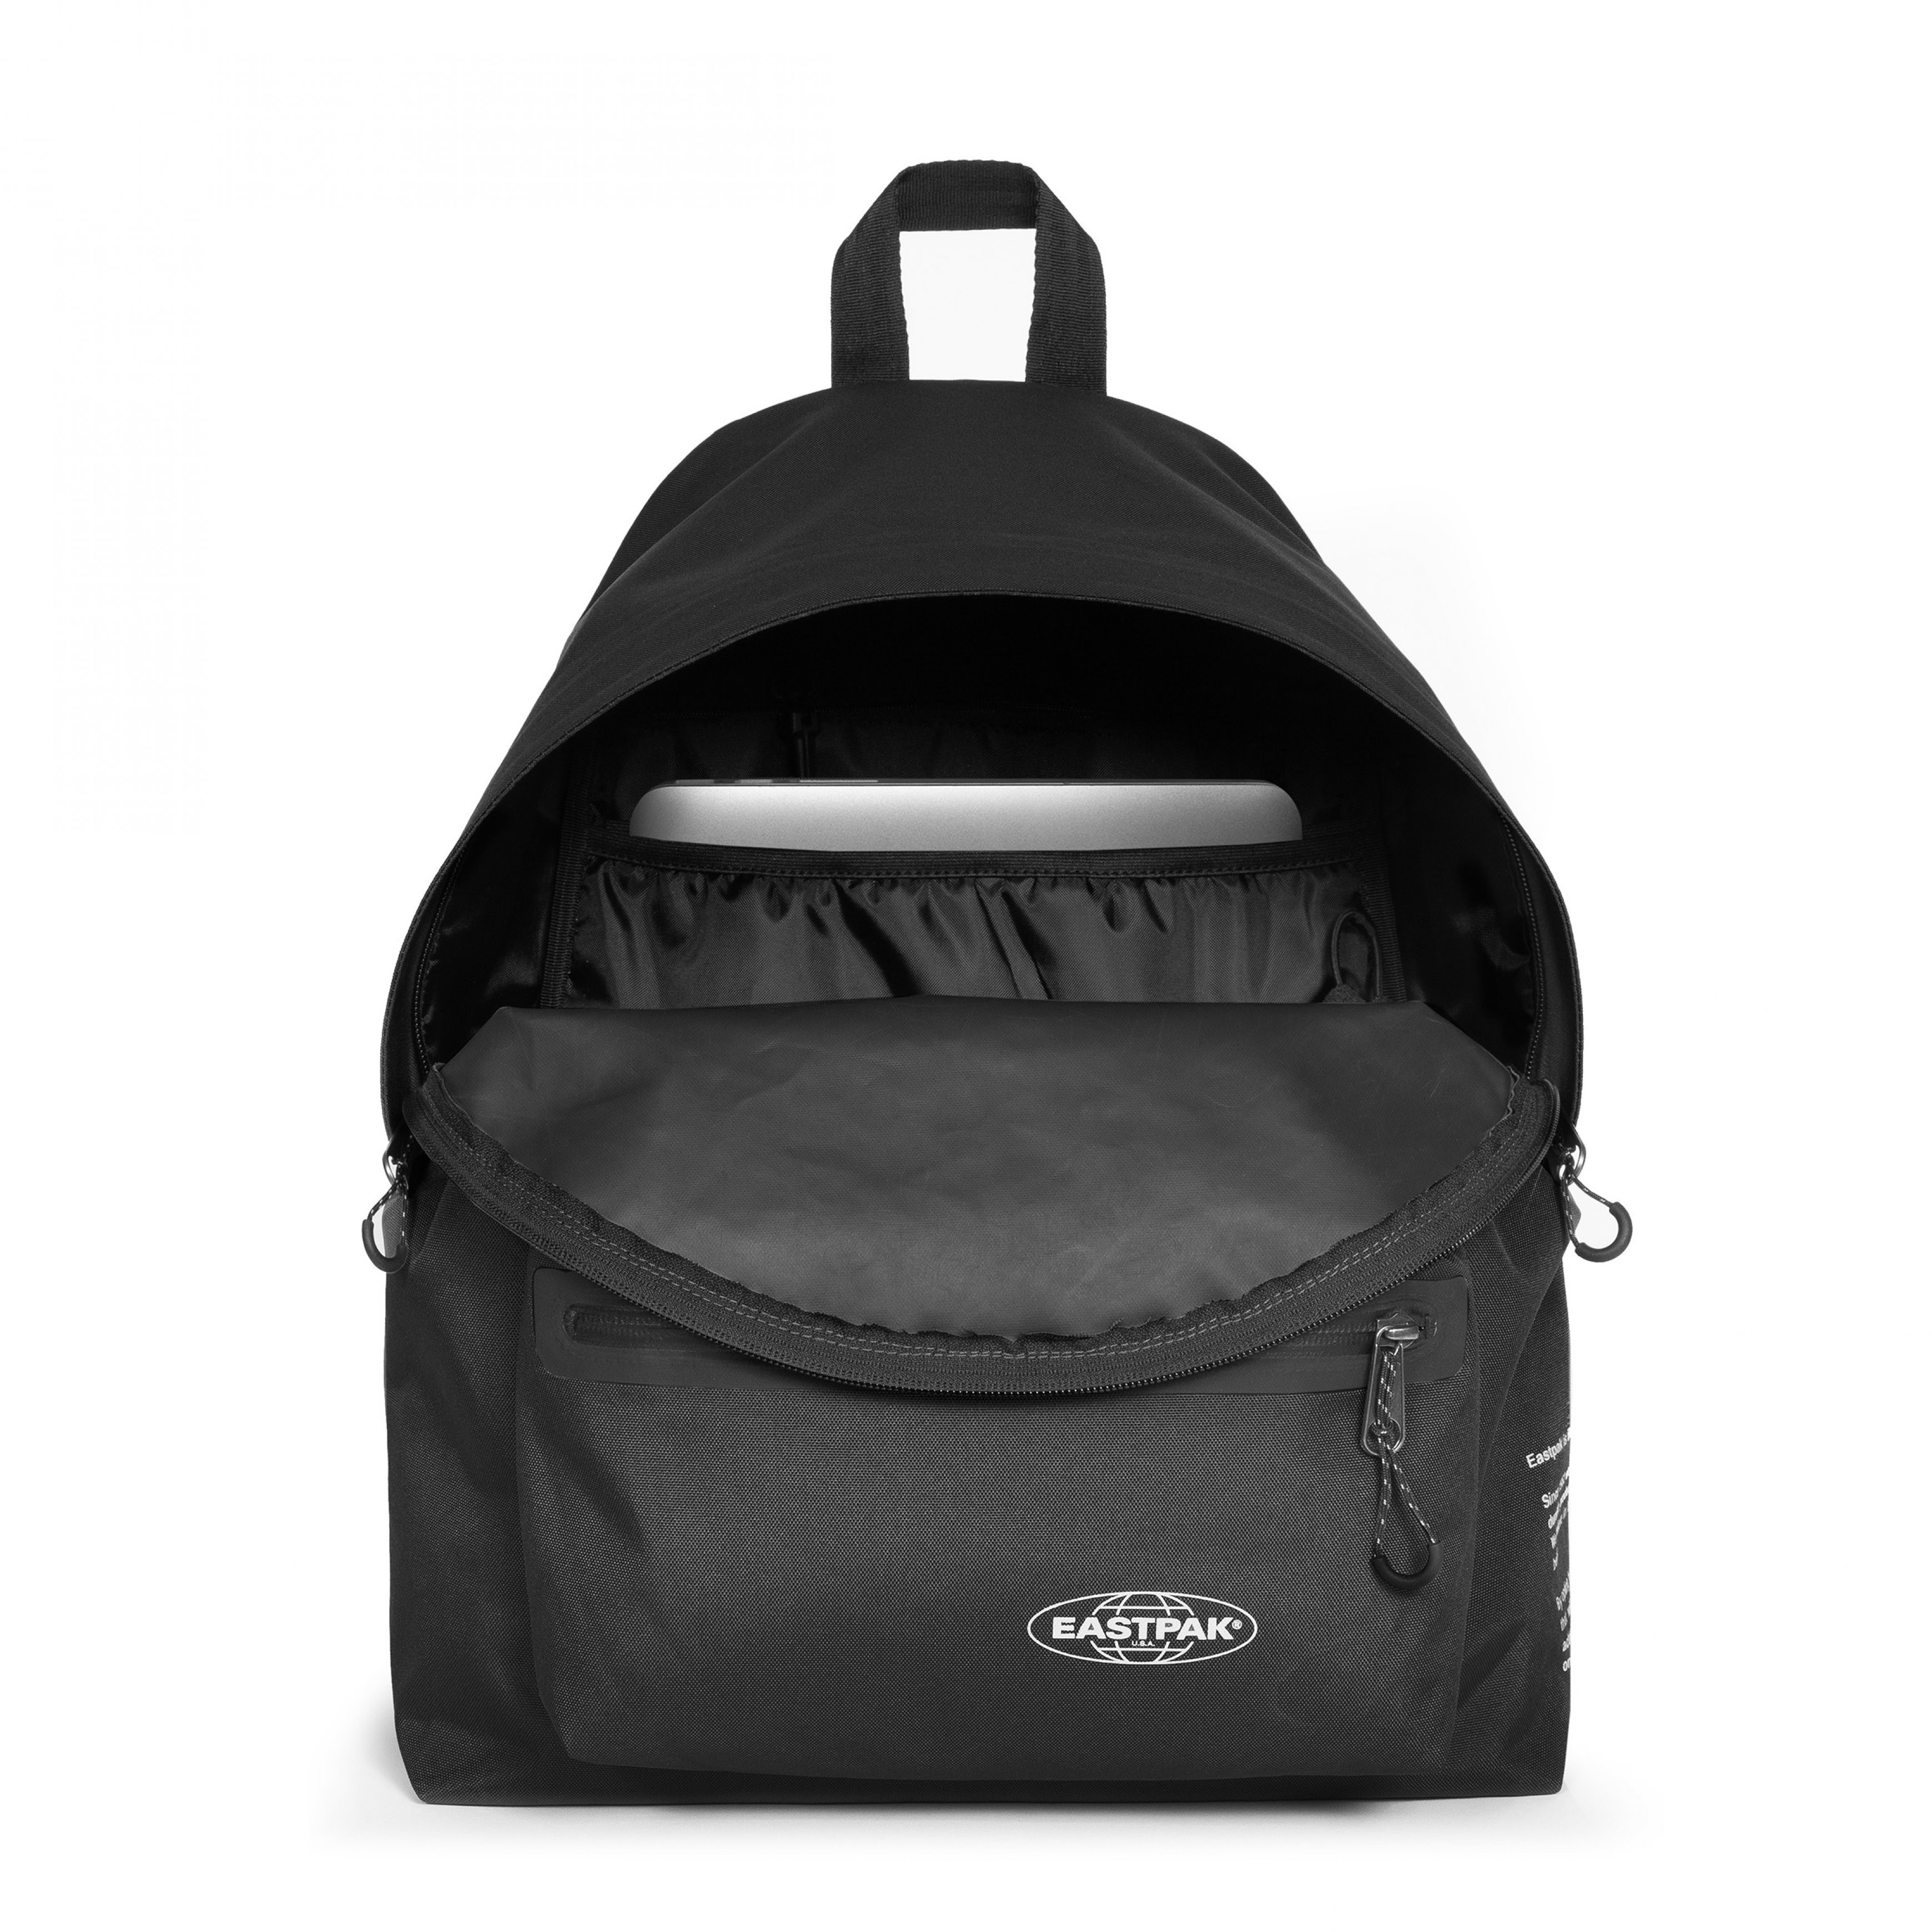 Eastpak - Padded Pak'r Storm Black backpack, Black, large image number 1